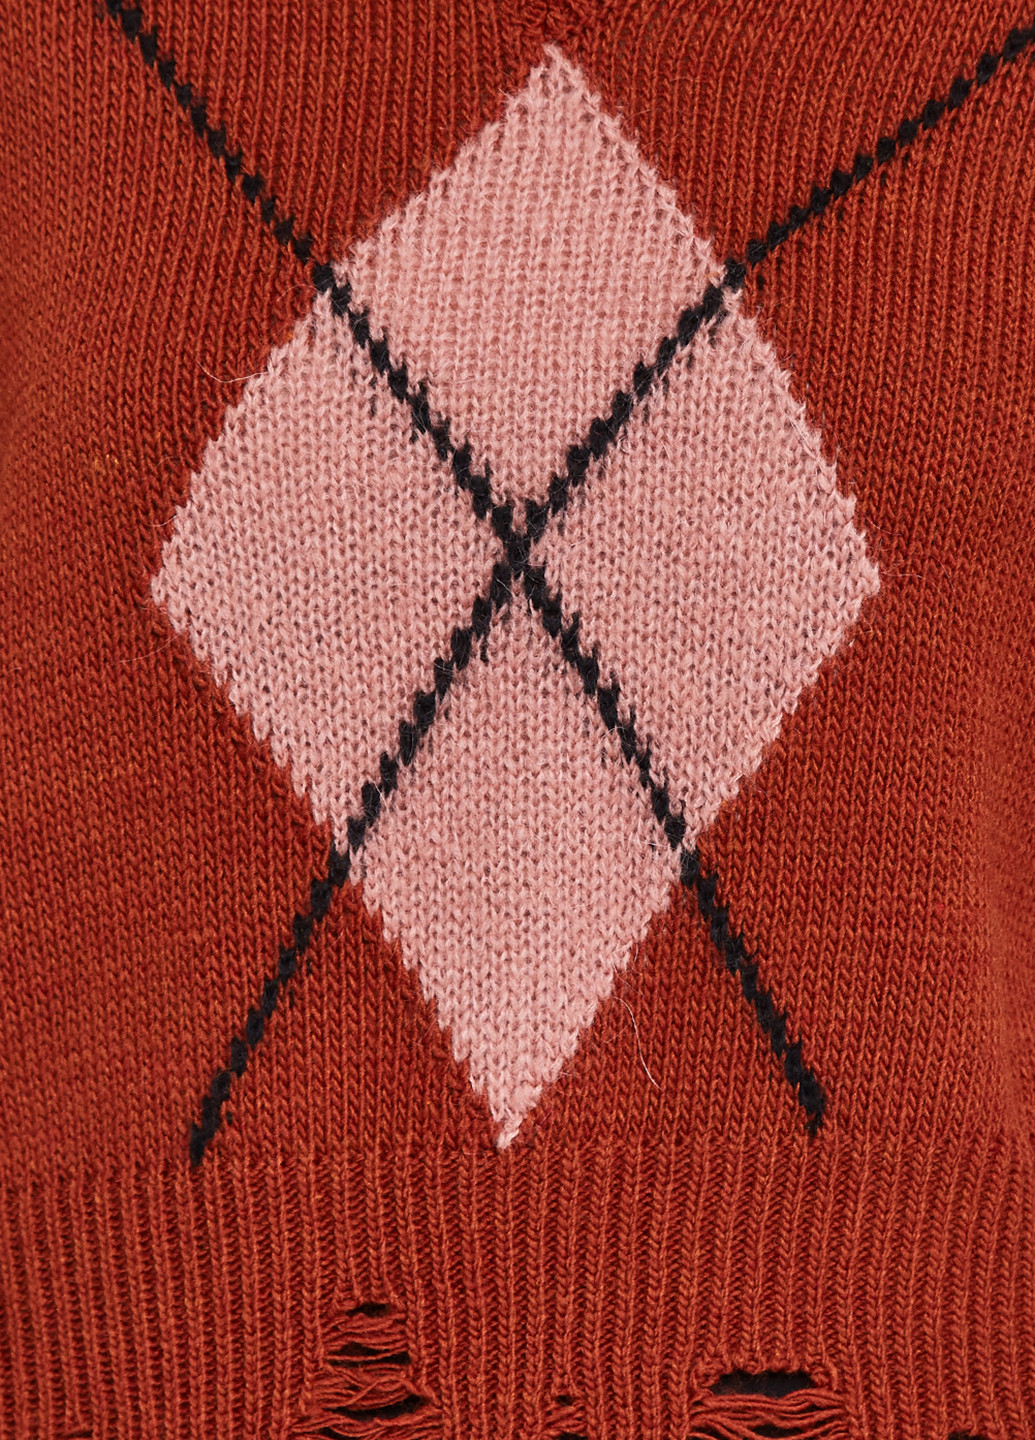 Коричневый демисезонный пуловер пуловер Rinascimento